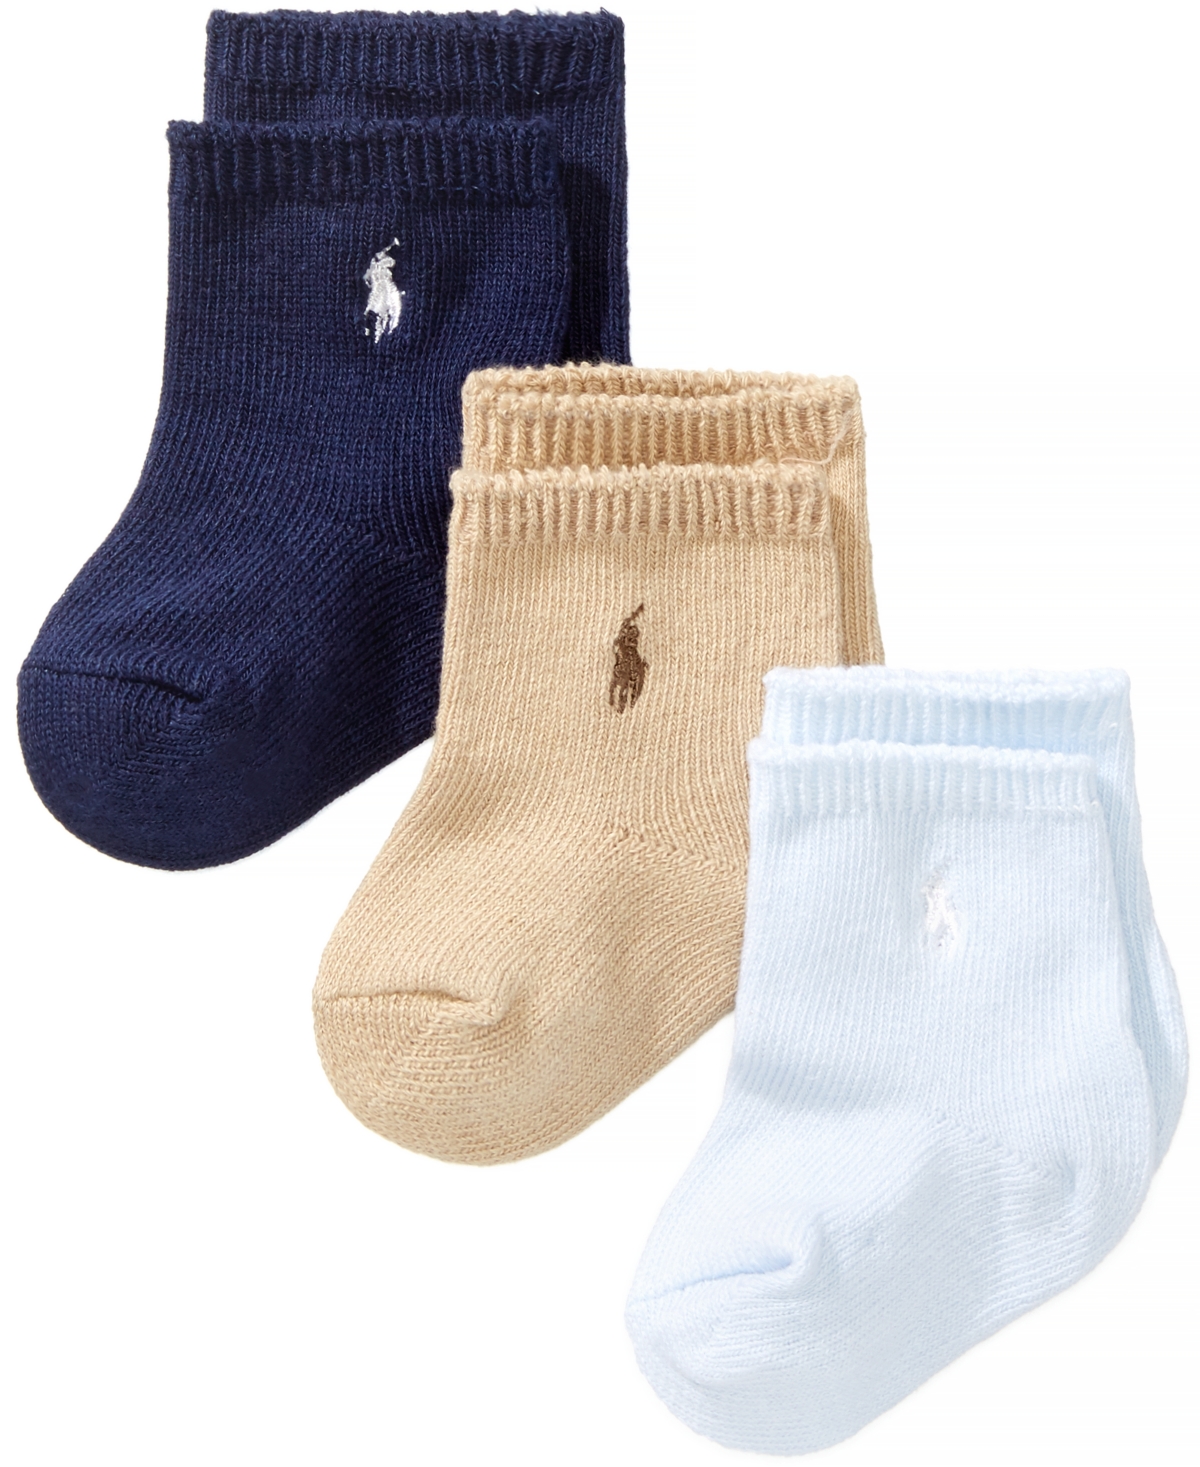 Polo Ralph Lauren Ralph Lauren Baby Boys Embroidered Logo Crew Socks, Pack Of 3 In Blue,khaki,navy